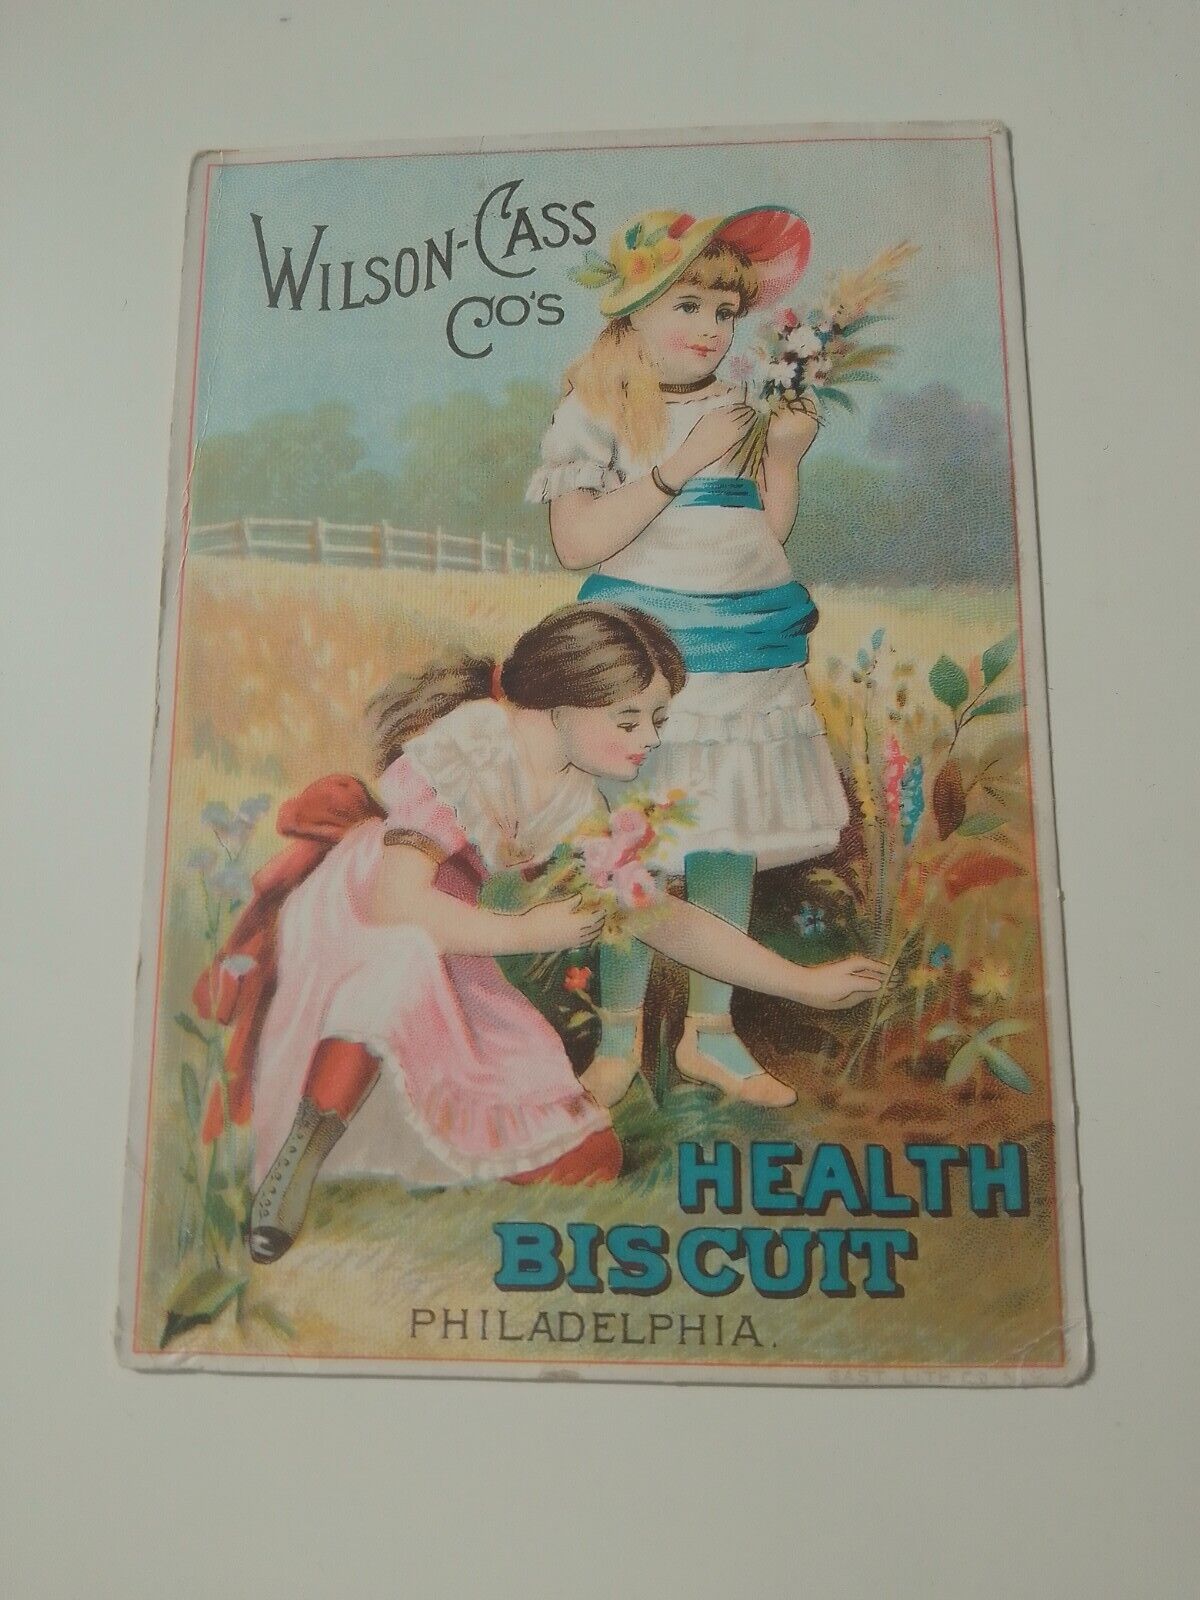 Wilson-Cass Co\'s Health Biscuit Philadelphia Card